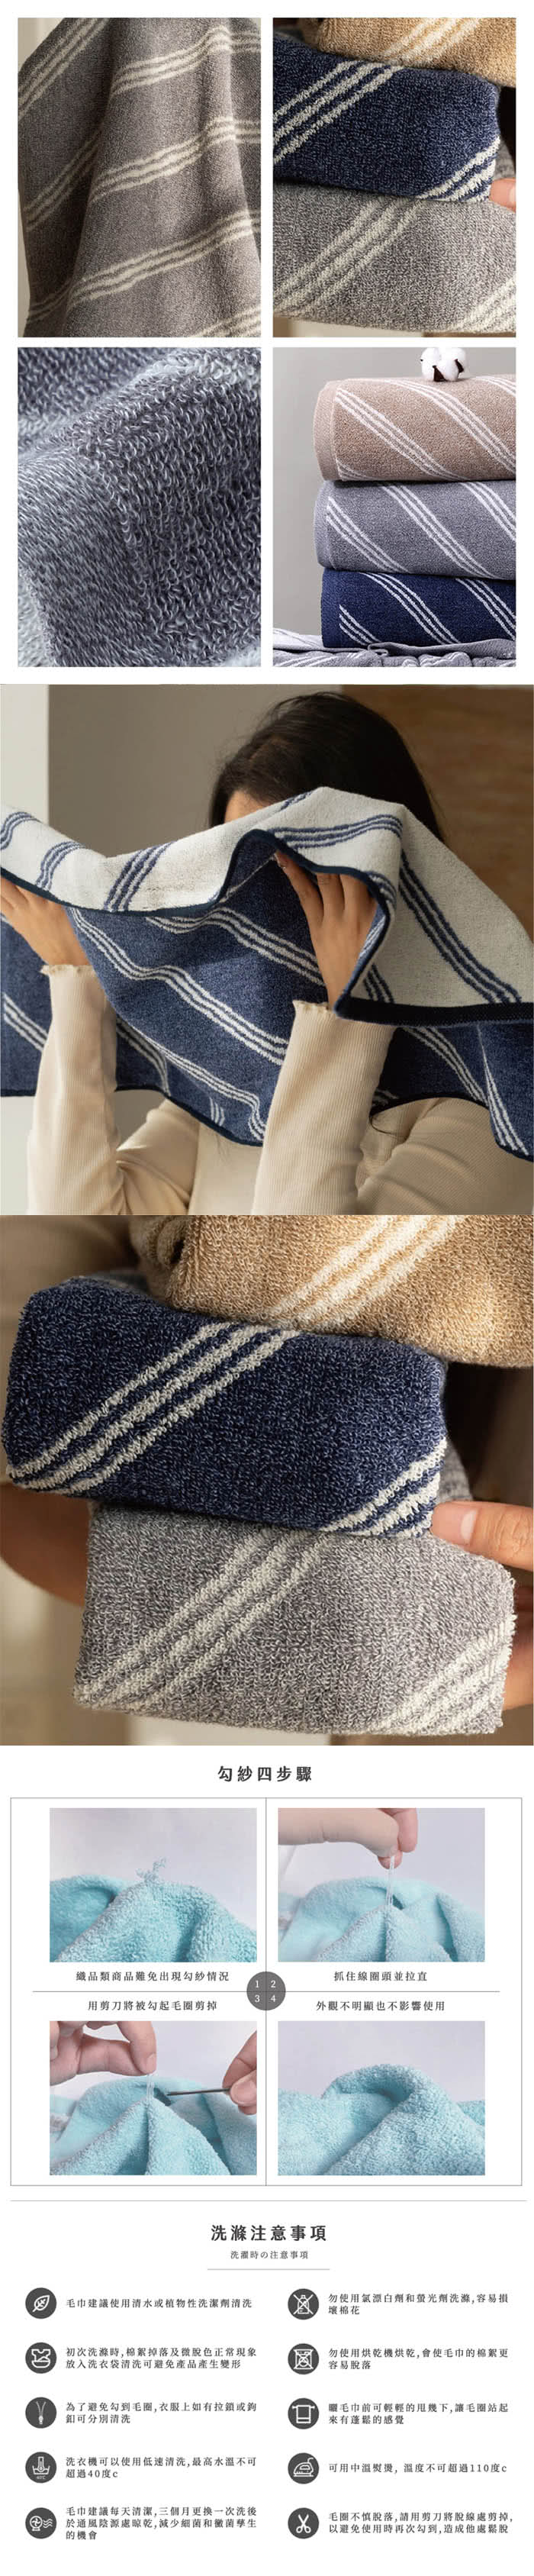 HKIL-巾專家 斜條純棉毛巾x24入(藍色/灰色/咖啡色-